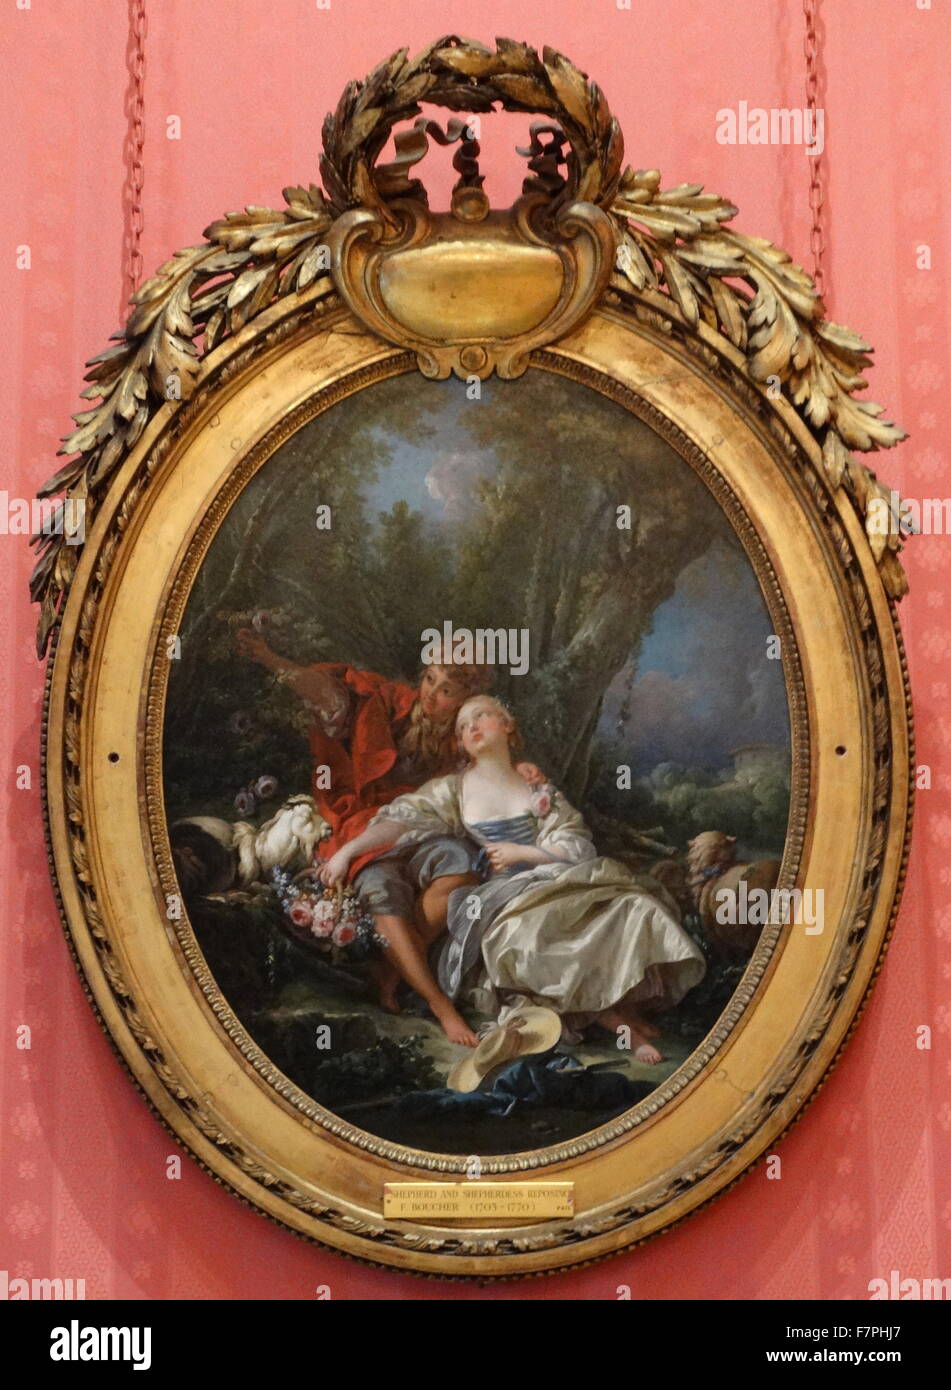 Gemälde mit dem Titel "Hirte und Shepherdress Knäblein" François Boucher (1703-1770) französischen Malers im Rokoko-Stil. Vom 18. Jahrhundert Stockfoto